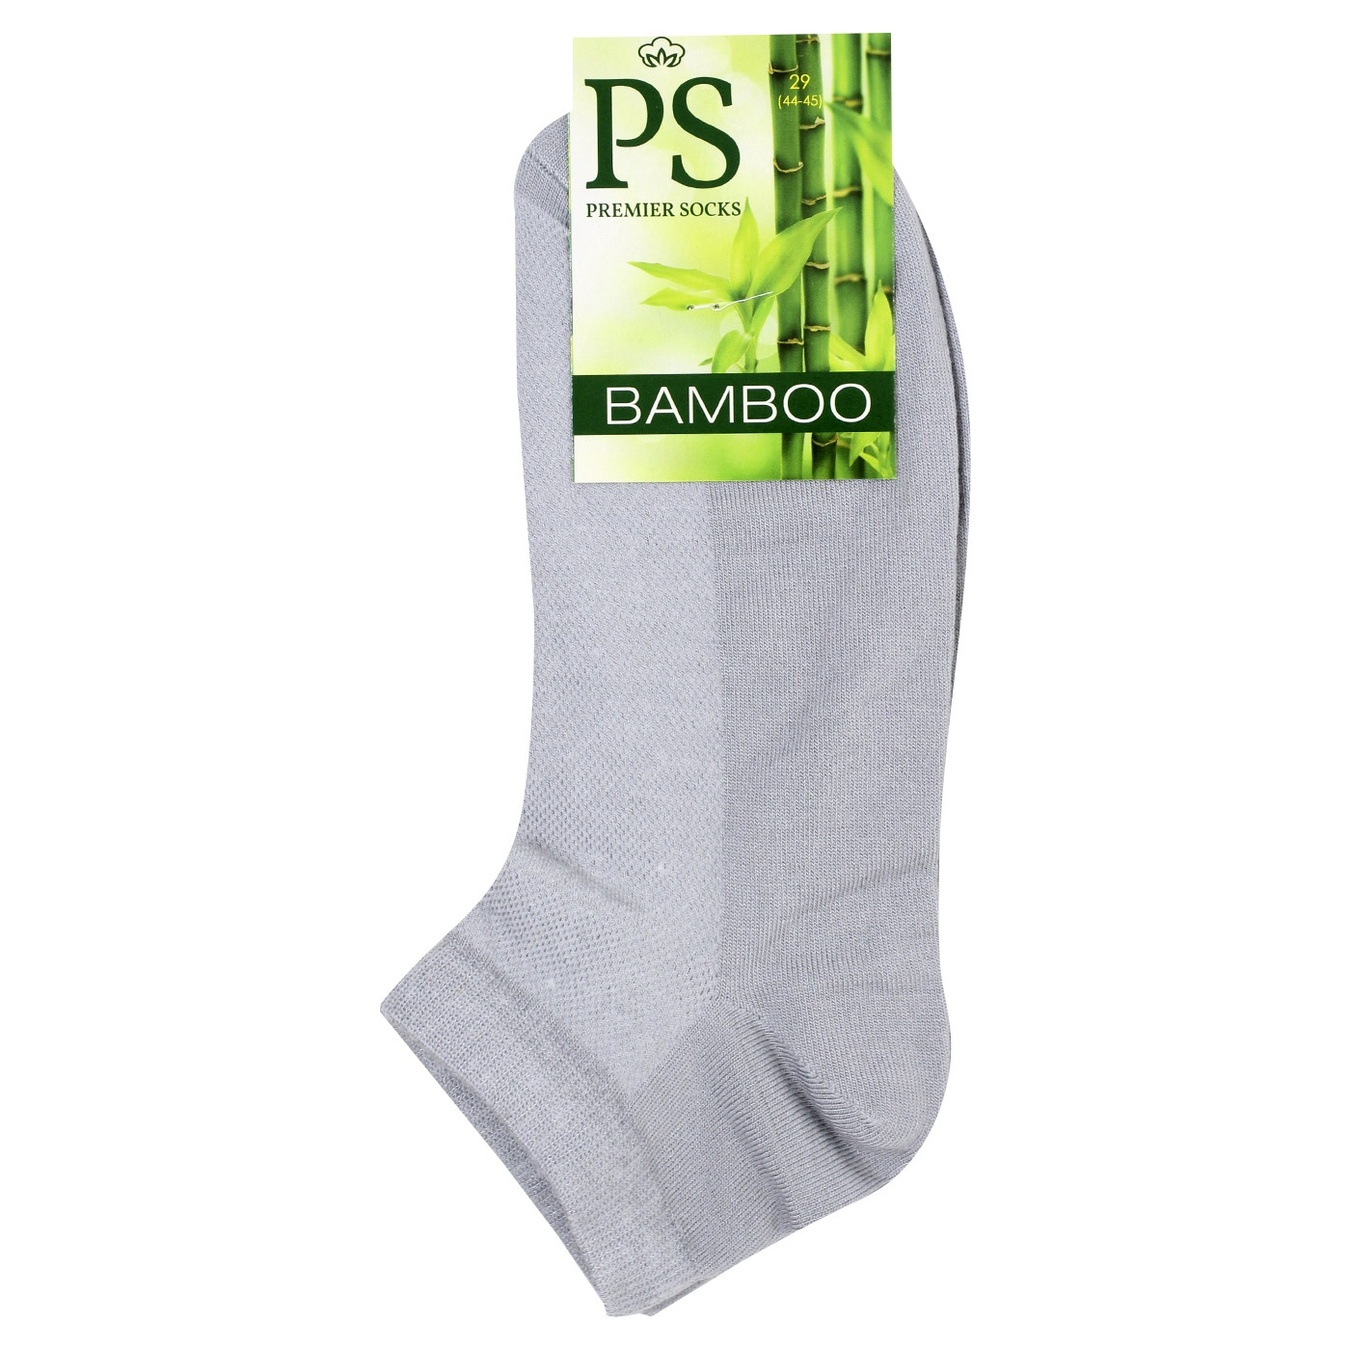 Men's socks Premier Socks Bamboo gray short summer mesh 29 years.